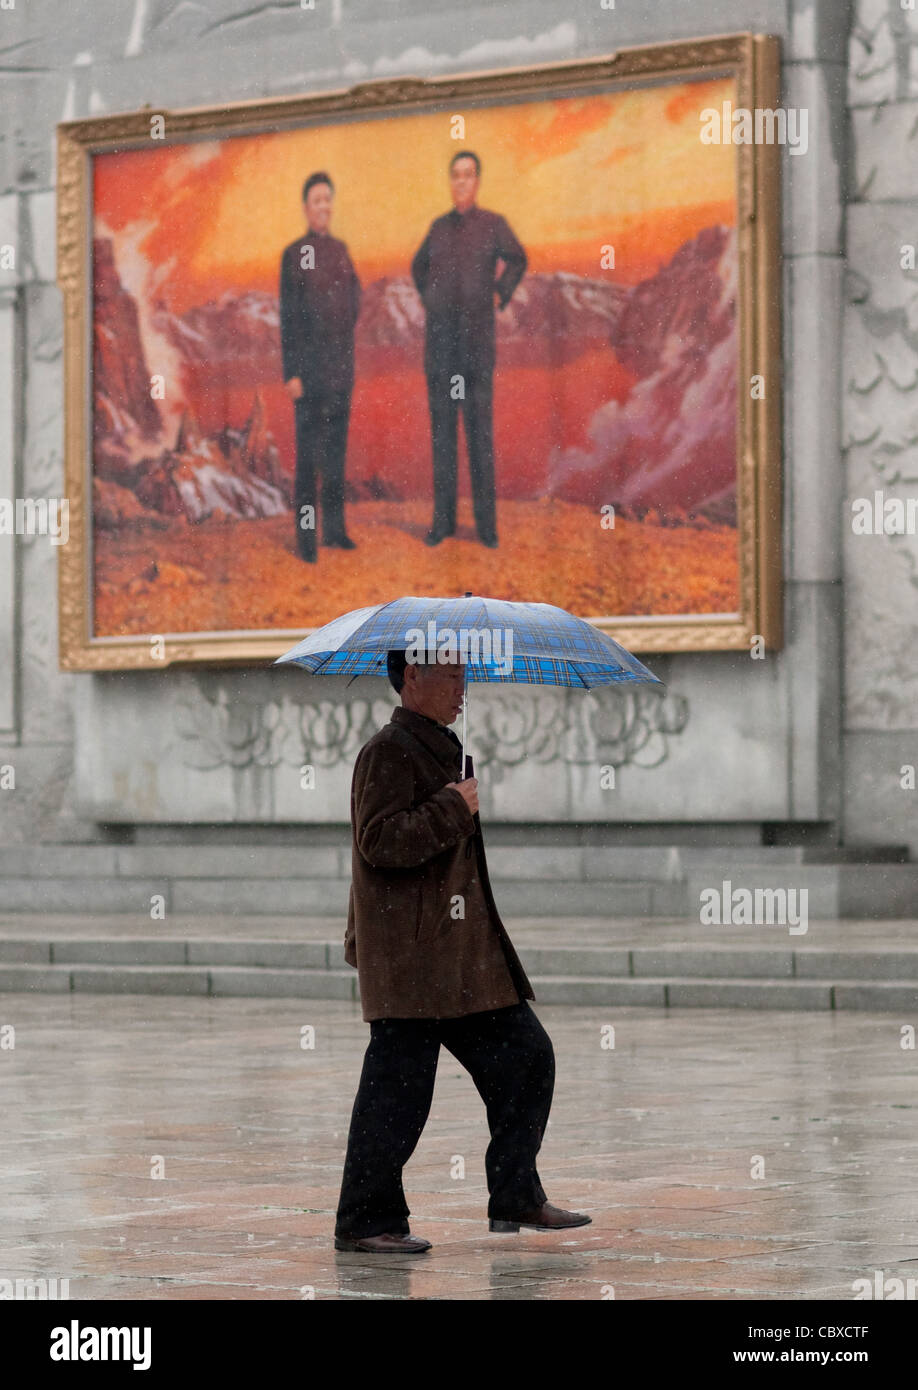 Homme AVEC UN PARAPLUIE EN FACE D'une affiche de propagande, Pyongyang, Corée du Nord Banque D'Images